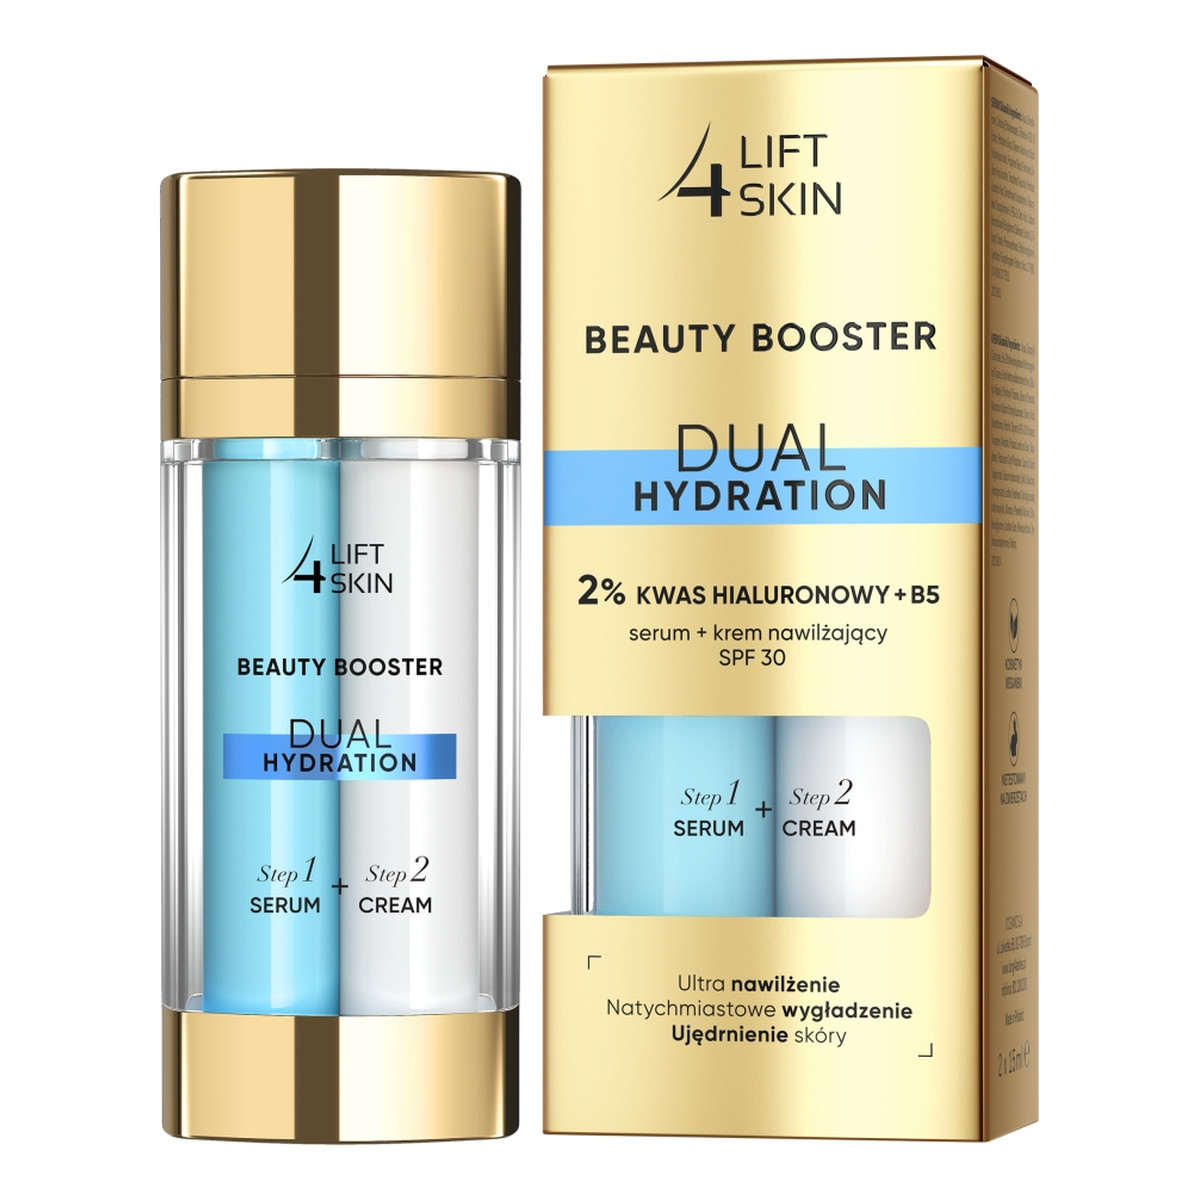 Lift 4 Skin Beauty Booster Dual Hydration + B5 serum + krem nawilżający SPF30 2x15ml